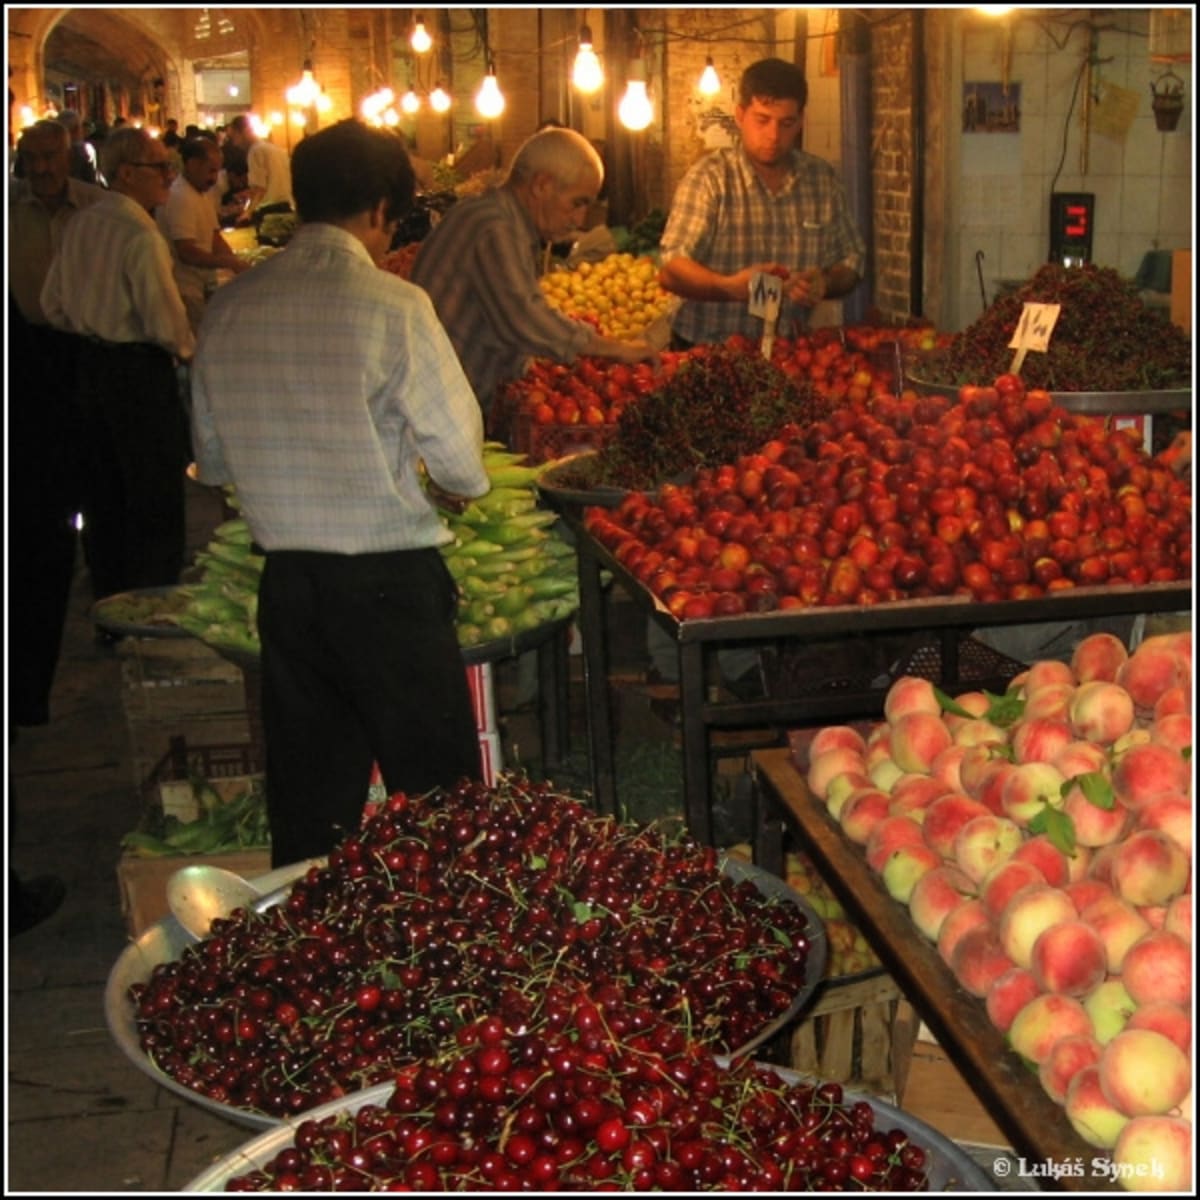 Obchody s perským ovocem